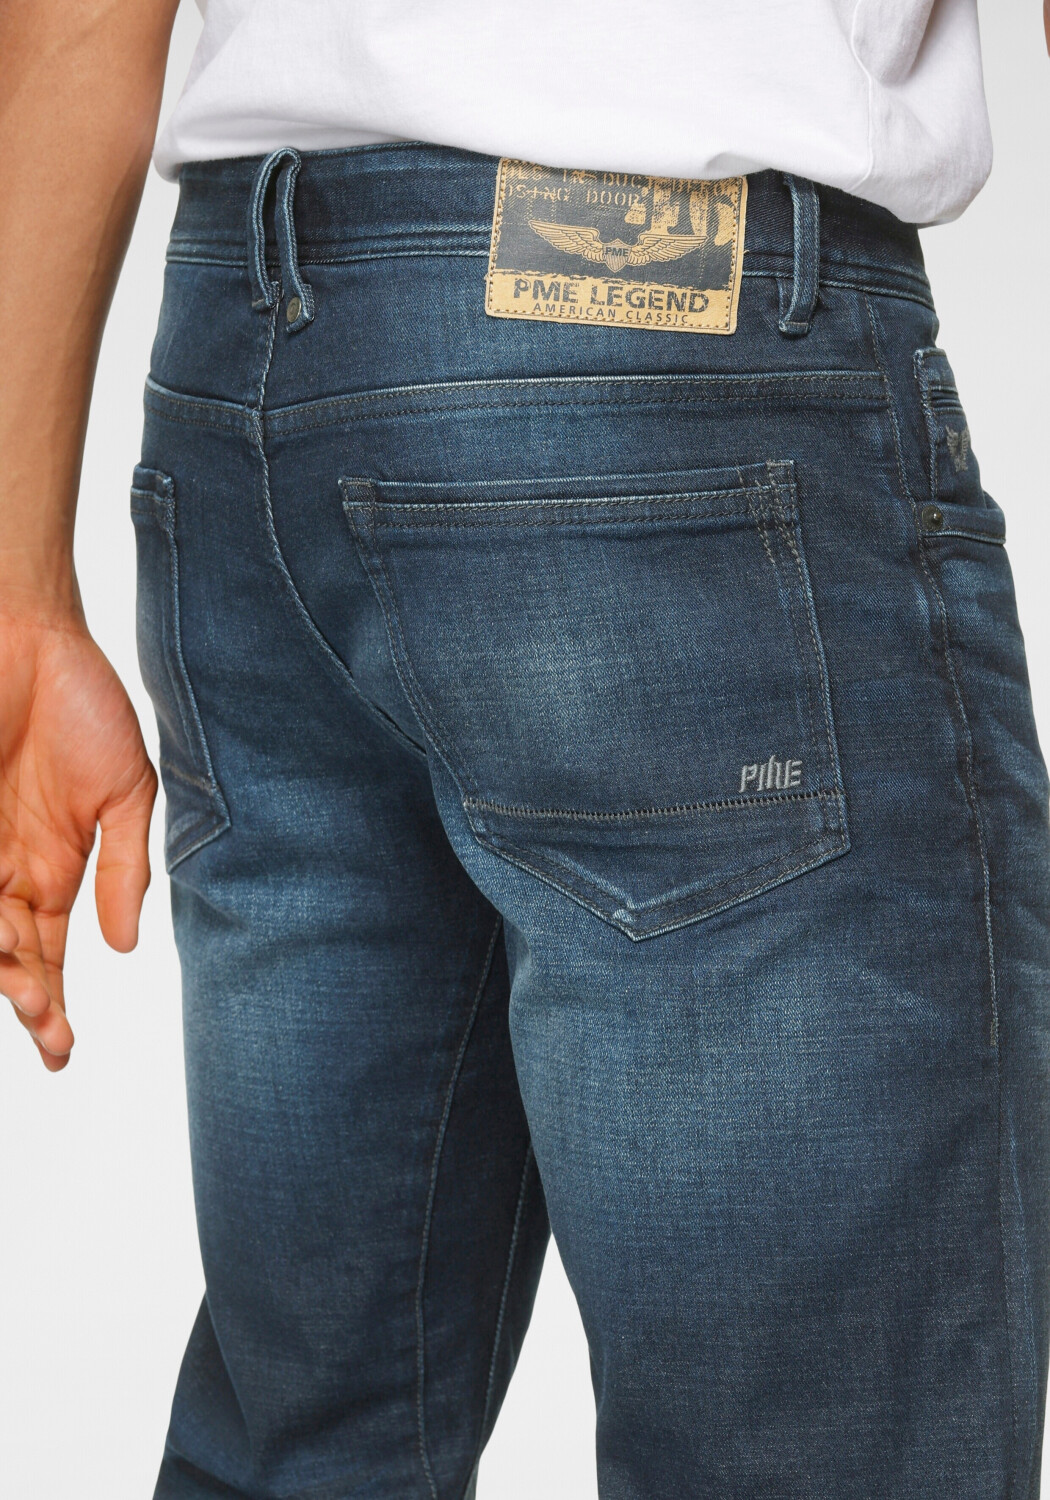 PME Legend ab Fit 49,99 | Tailwheel dark Jeans bei € wash Slim Preisvergleich